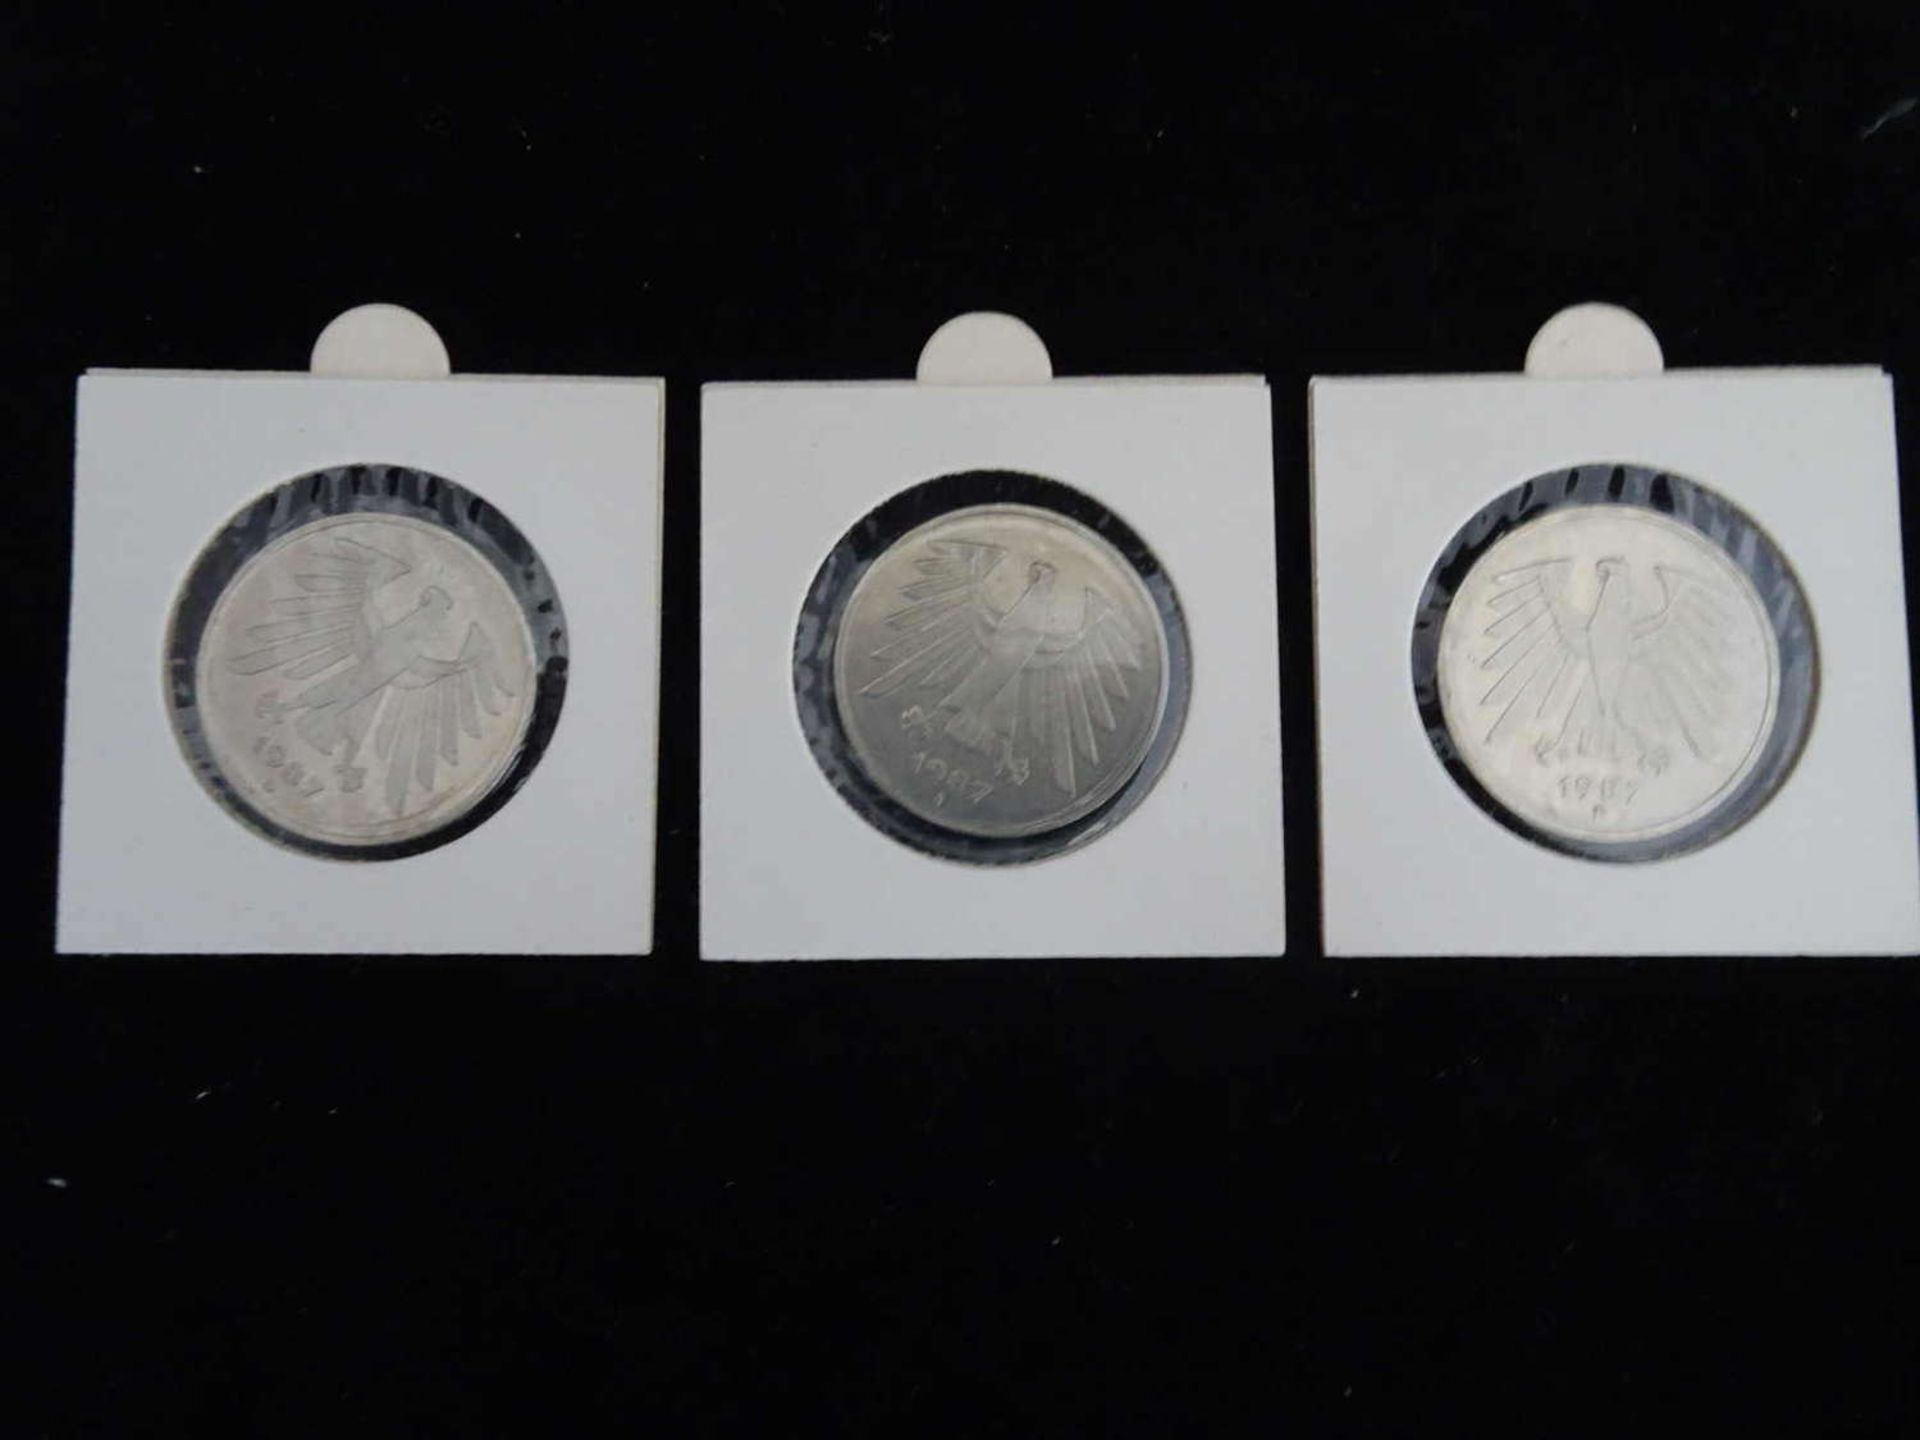 BRD 1987, 3 x 5.- DM - Münzen der Prägestätten D, F und J . Jaeger: 415. In Schutzhülle. - Image 2 of 2